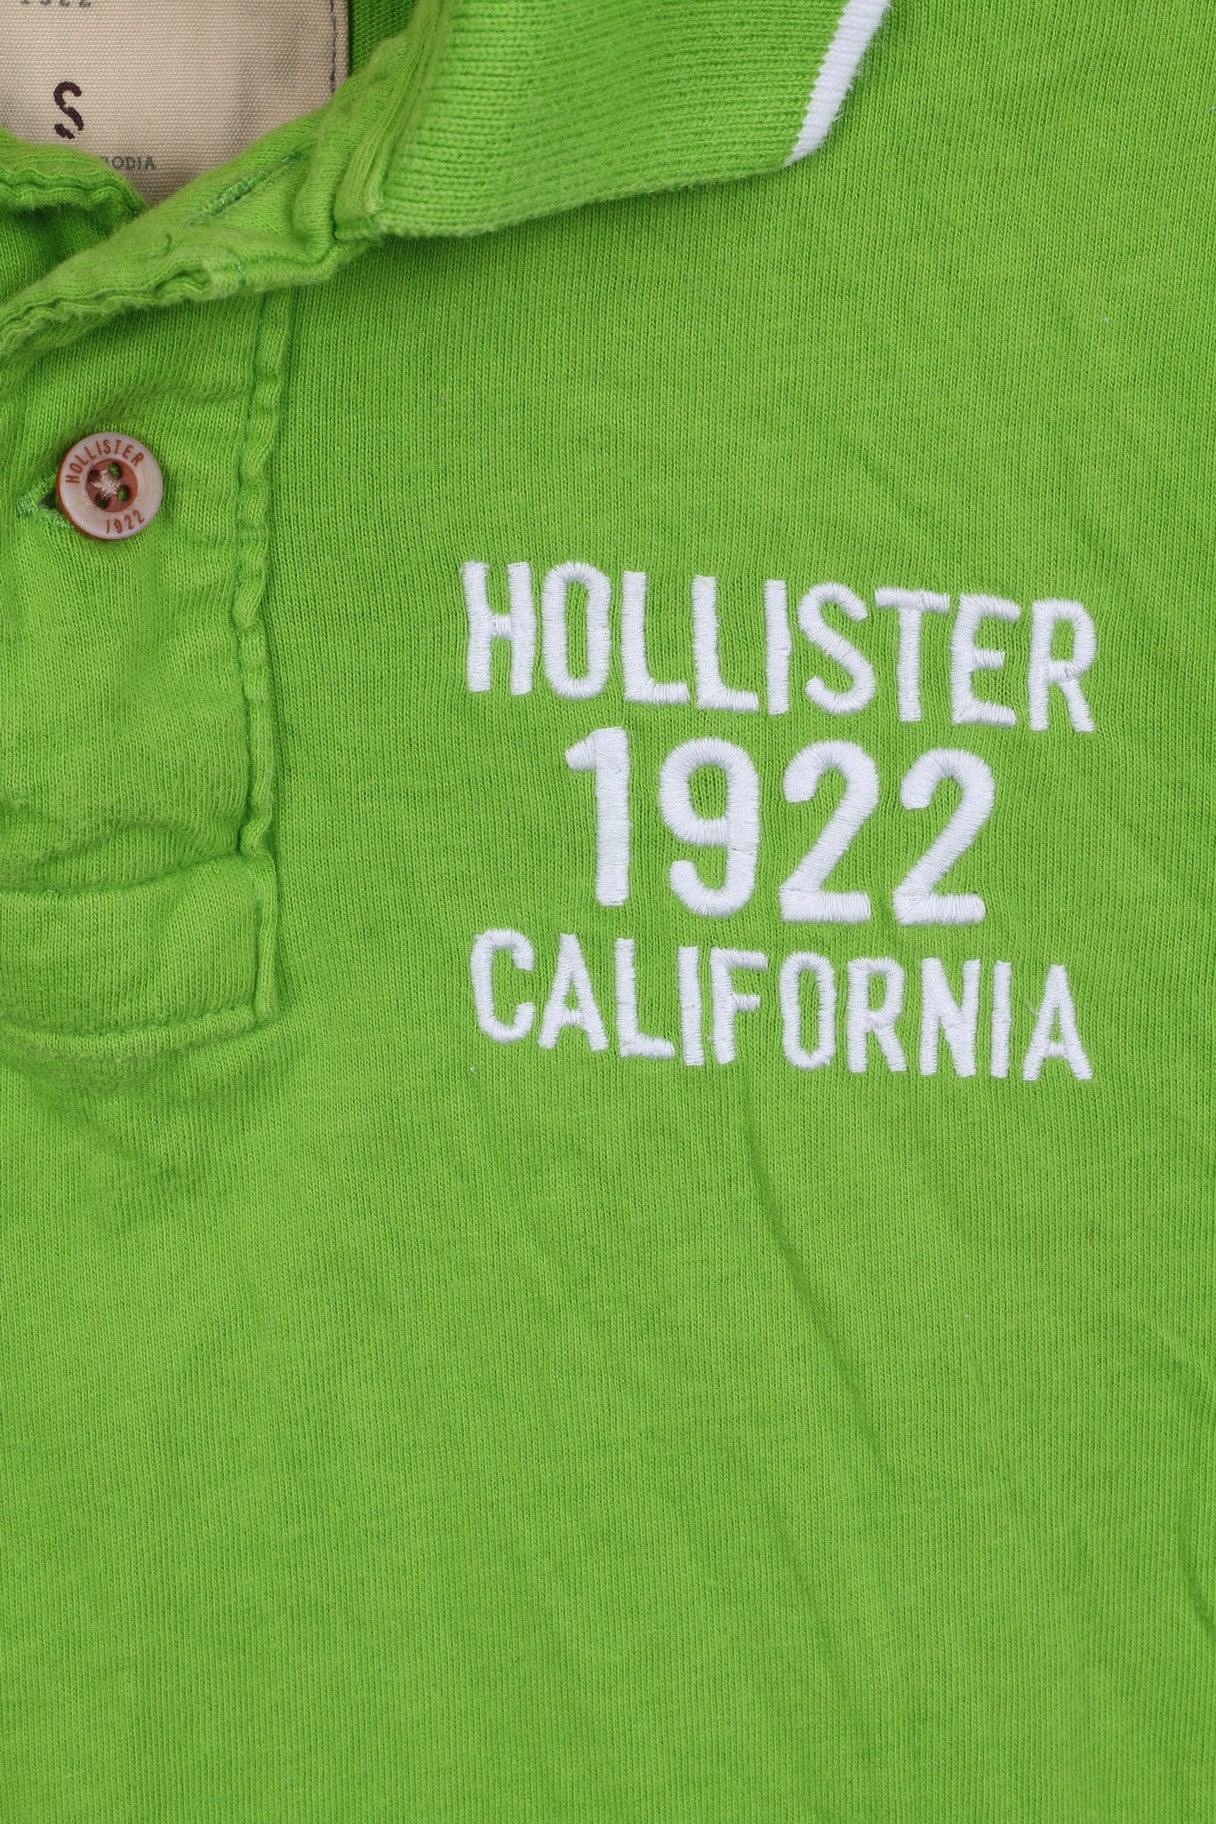 HOLLISTER Polo California Coton Vert Manches Courtes Homme